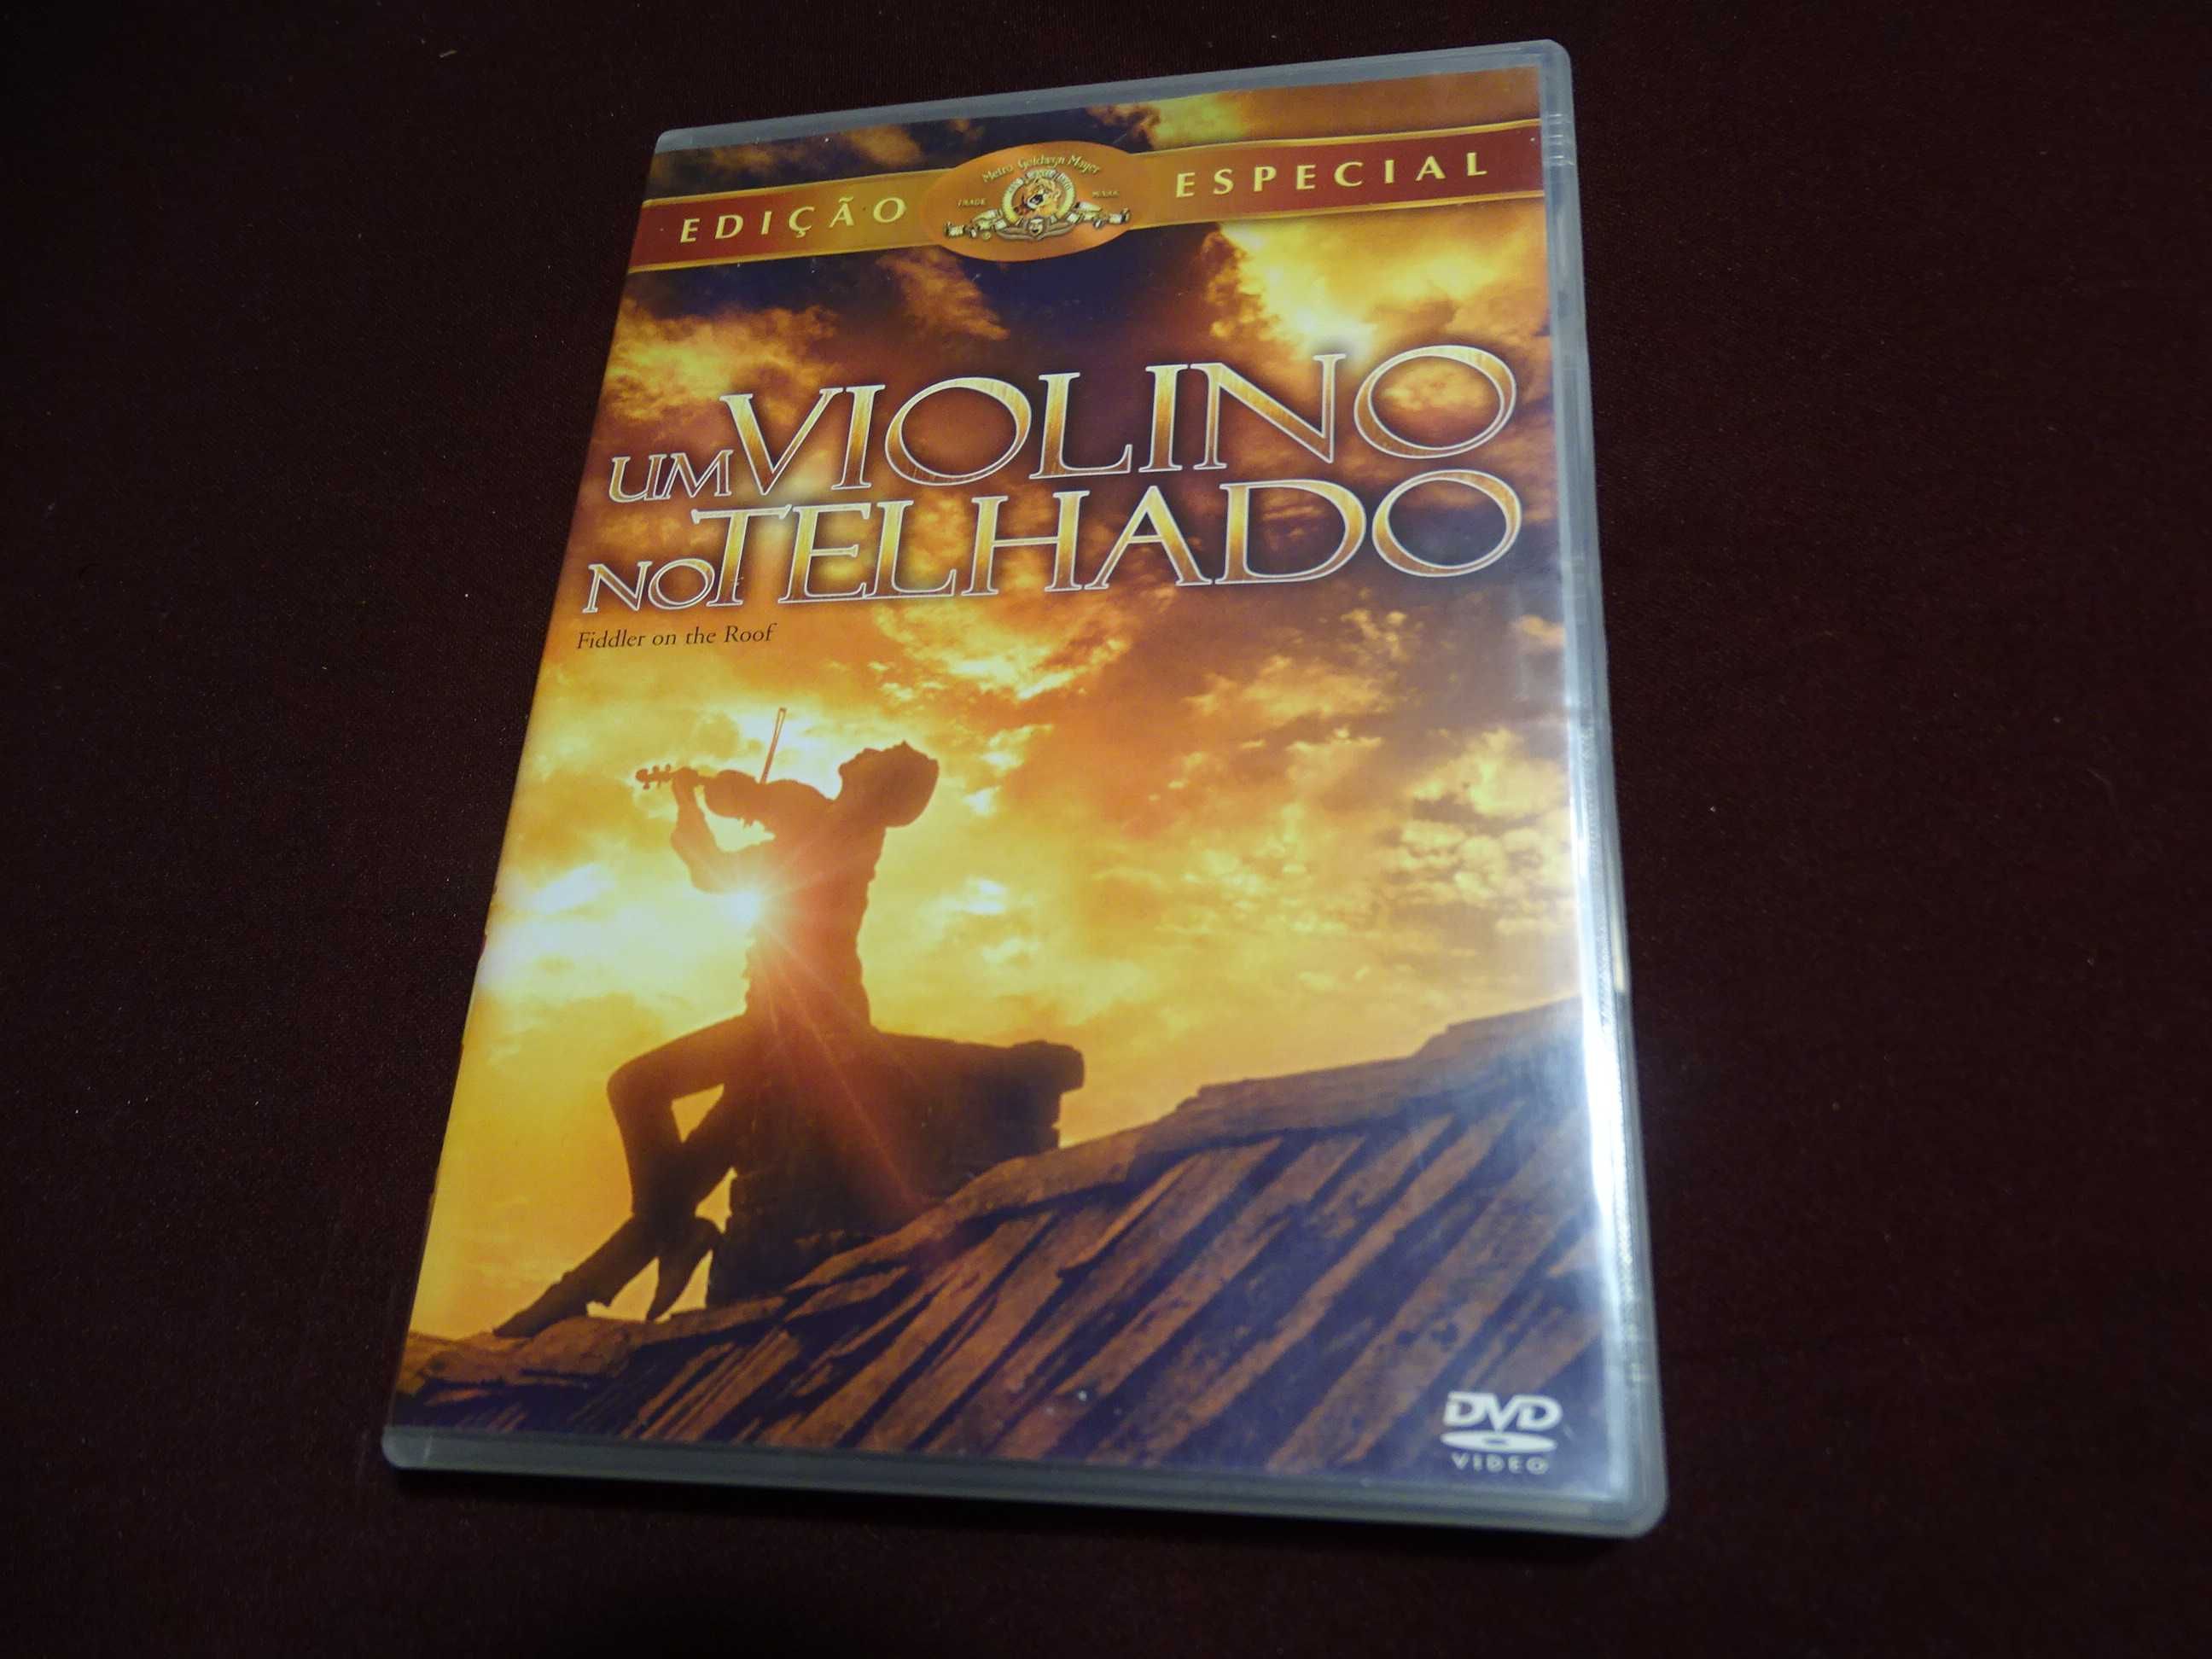 DVD-Um violino no telhado-Edição especial 2 discos